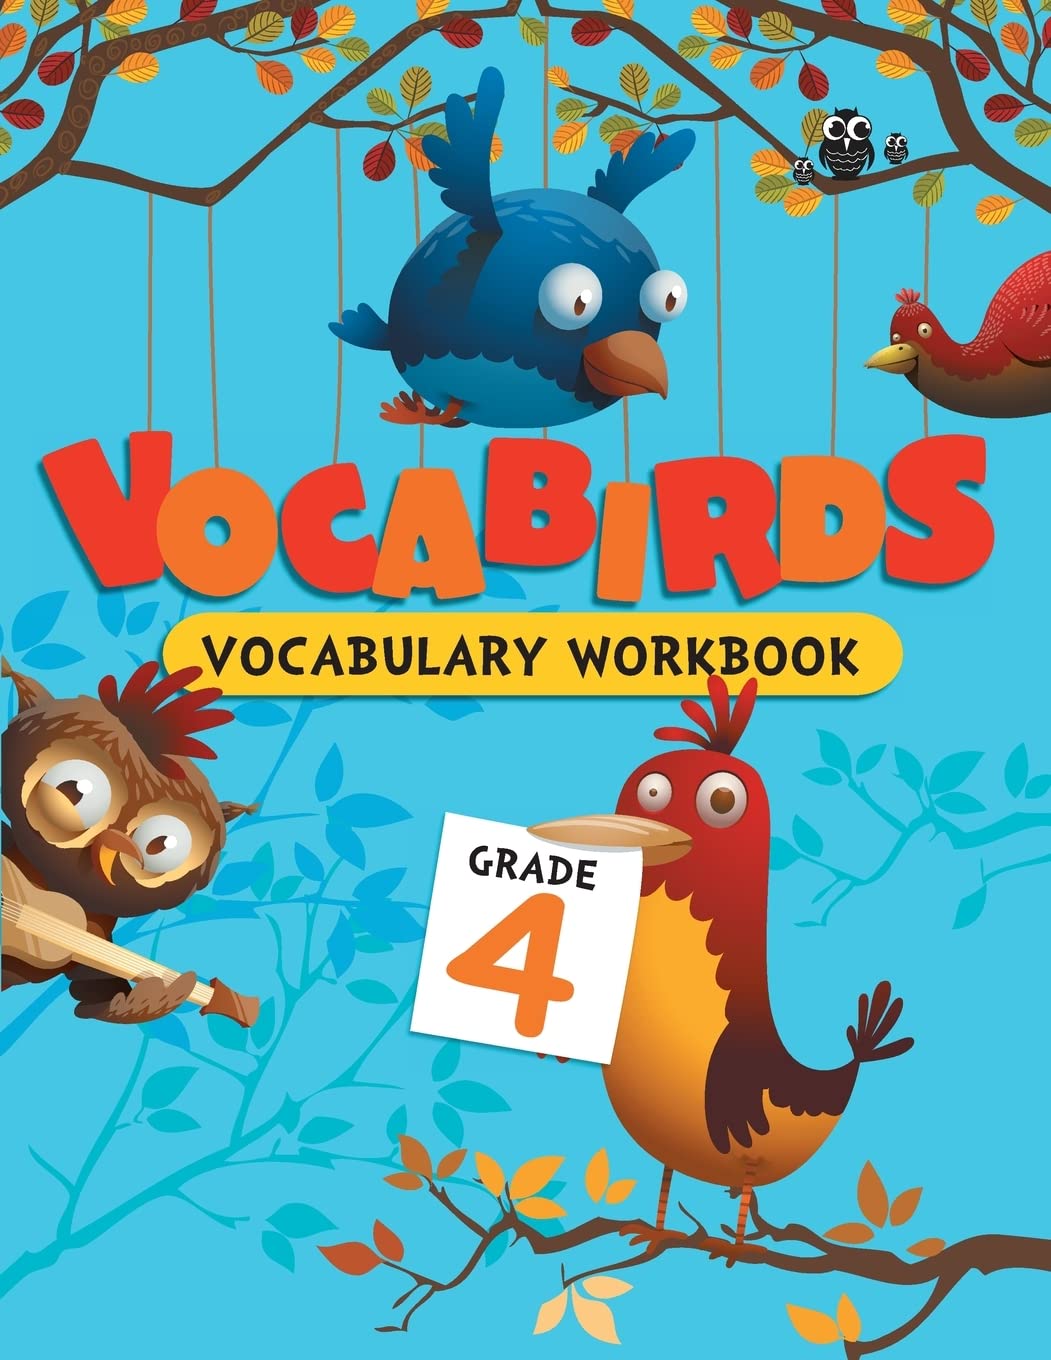 Vocabirds Vocabulary Activity Workbook Grade 4 (পেপারব্যাক)